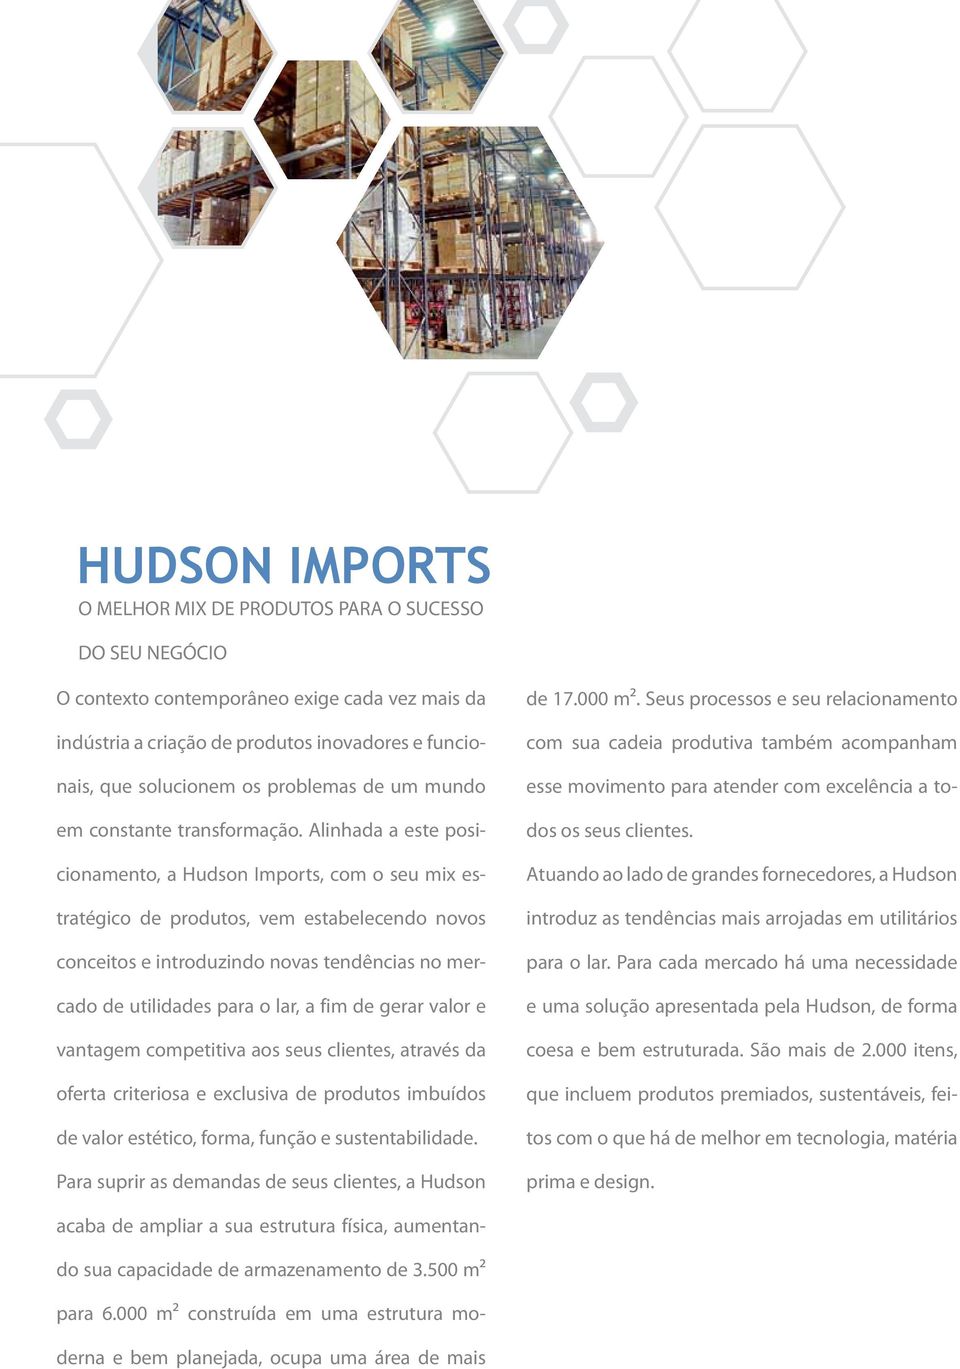 Alinhada a este posicionamento, a Hudson Imports, com o seu mix estratégico de produtos, vem estabelecendo novos conceitos e introduzindo novas tendências no mercado de utilidades para o lar, a fim